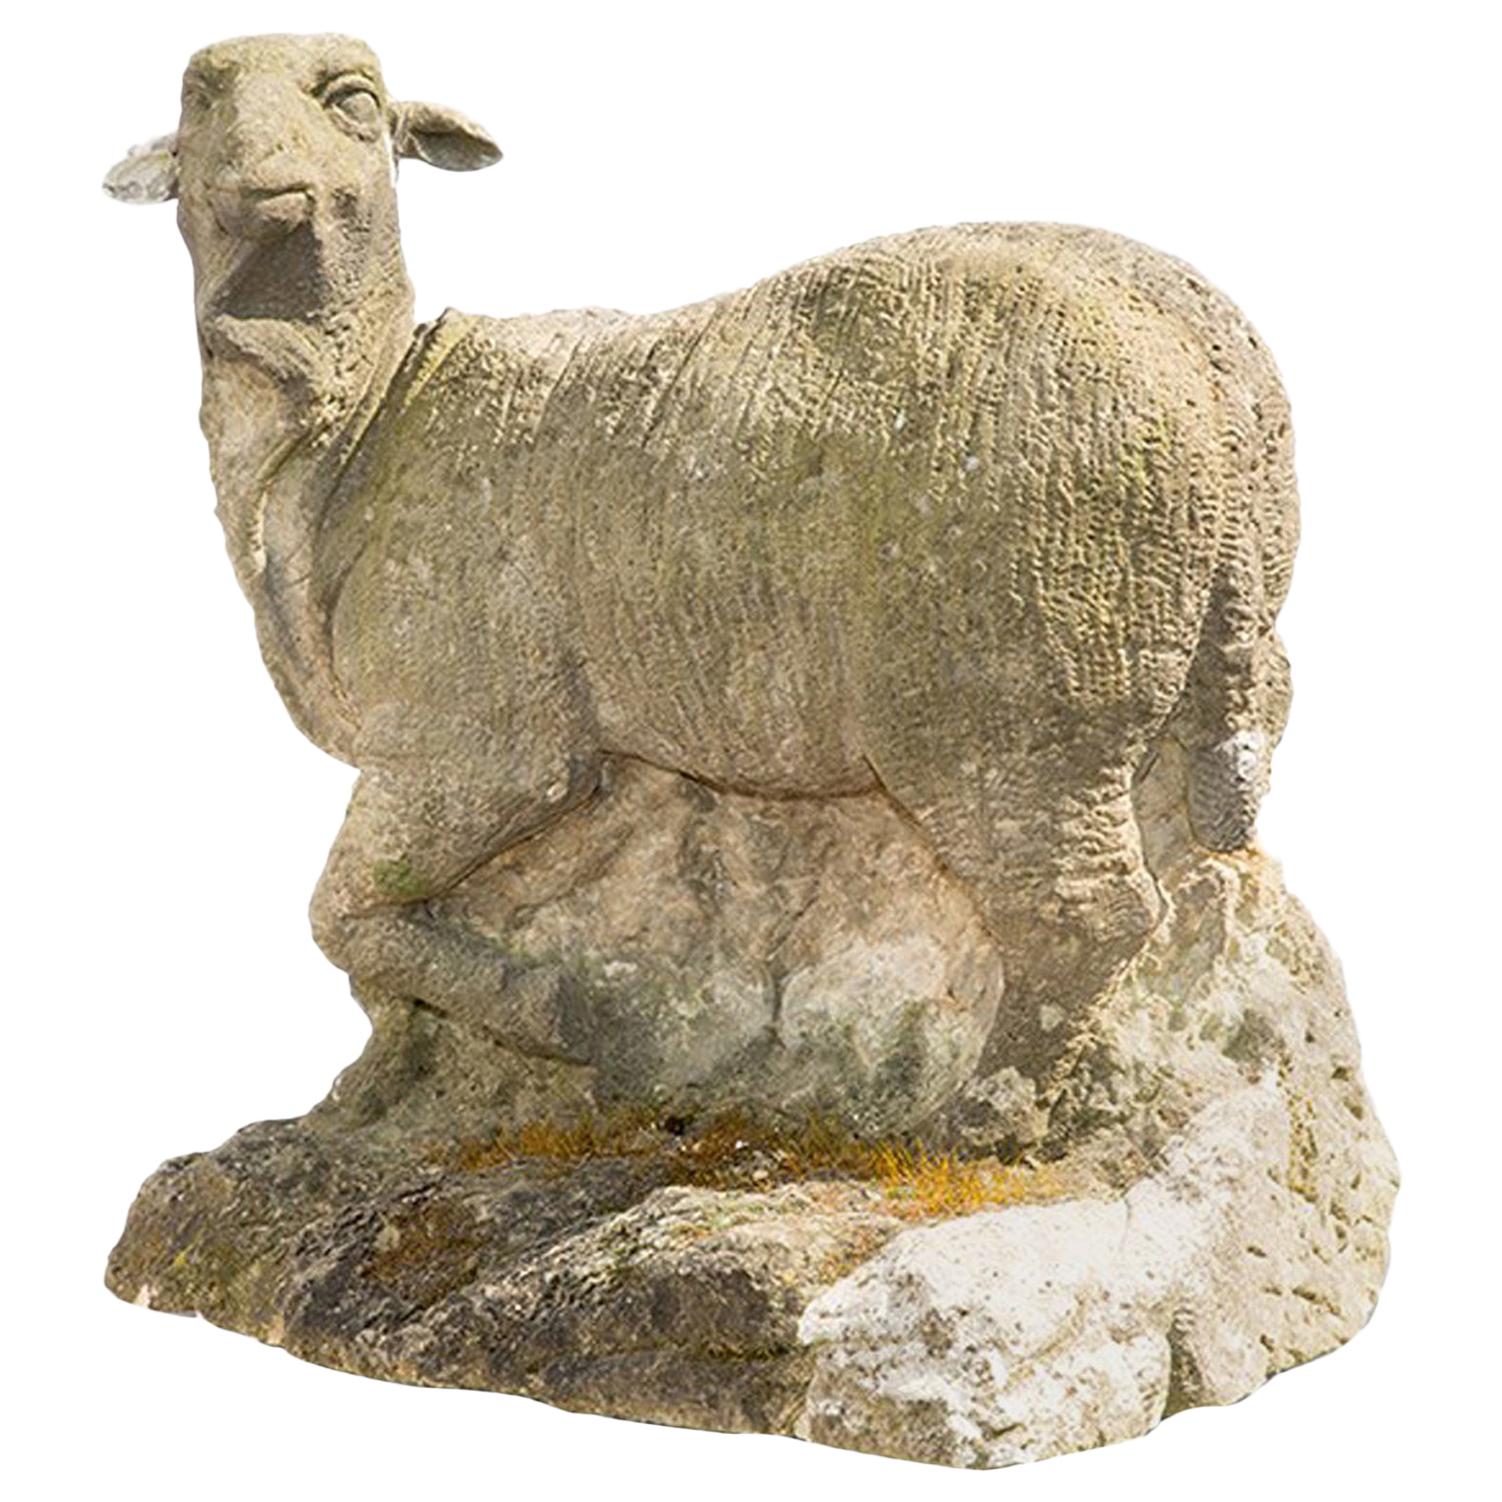 18th Century Antique German Sheep Garden Statue in Sandstone